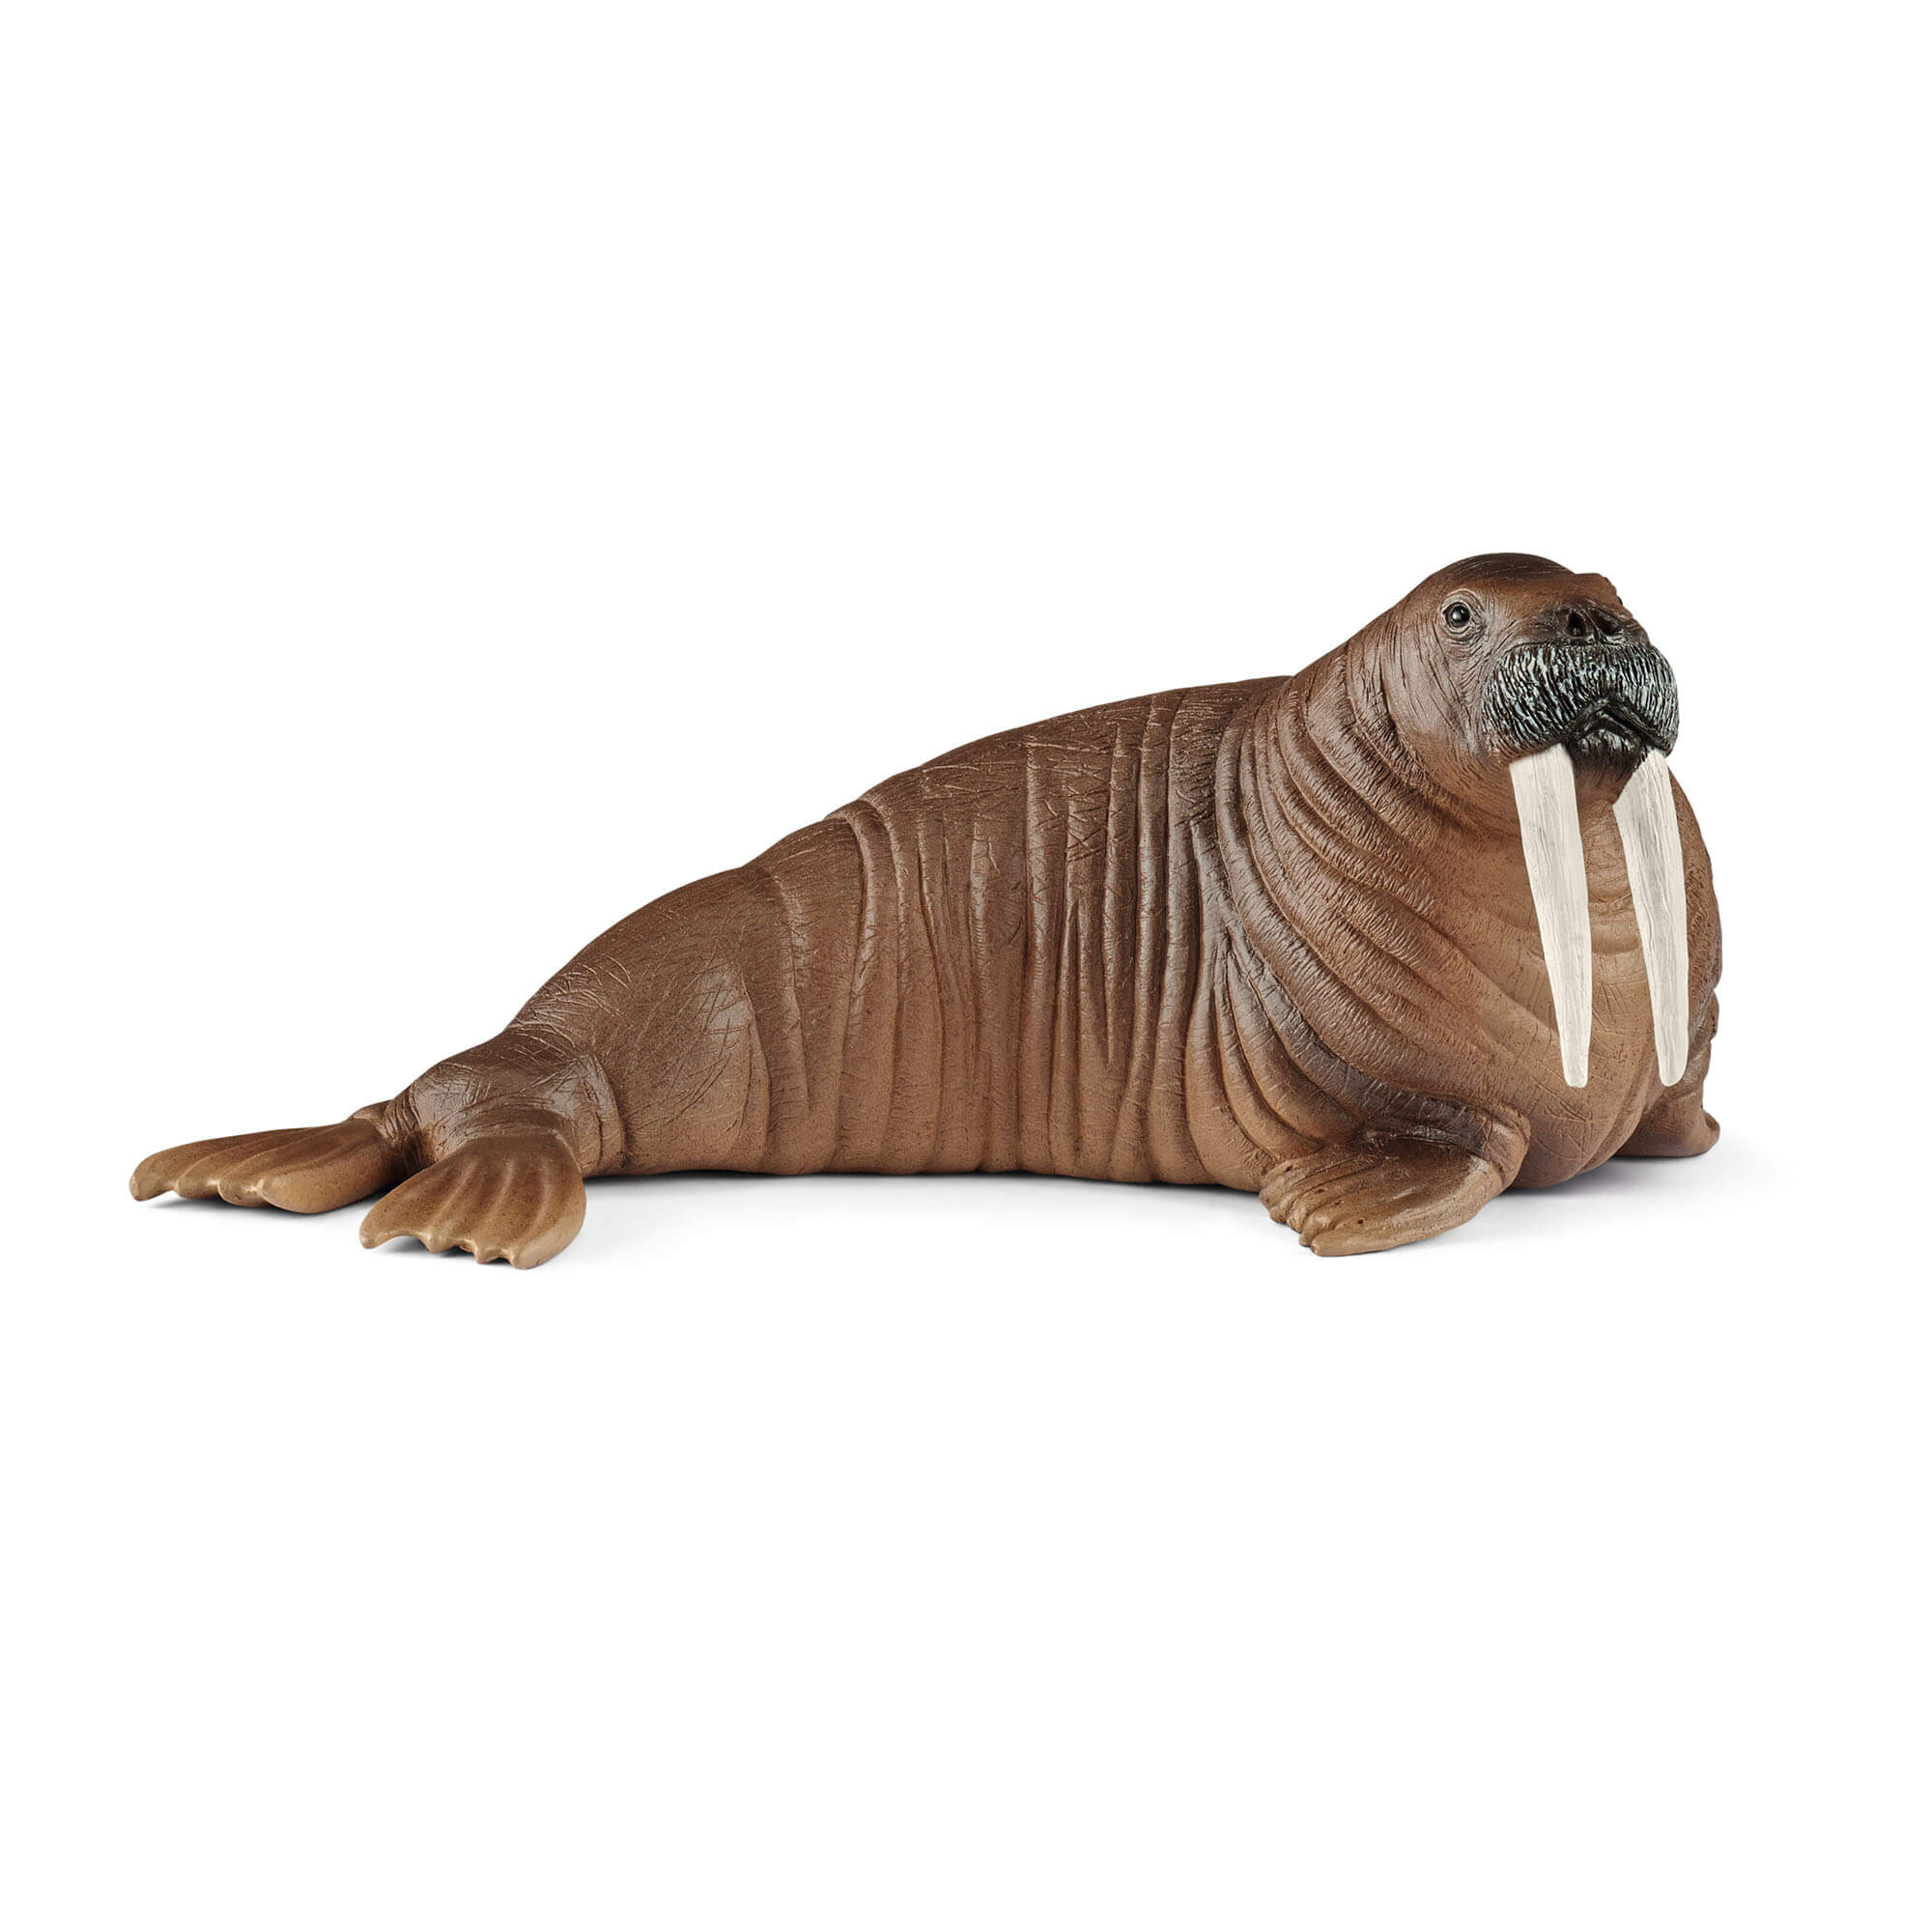 Schleich Wild Life Walrus Animal Figure